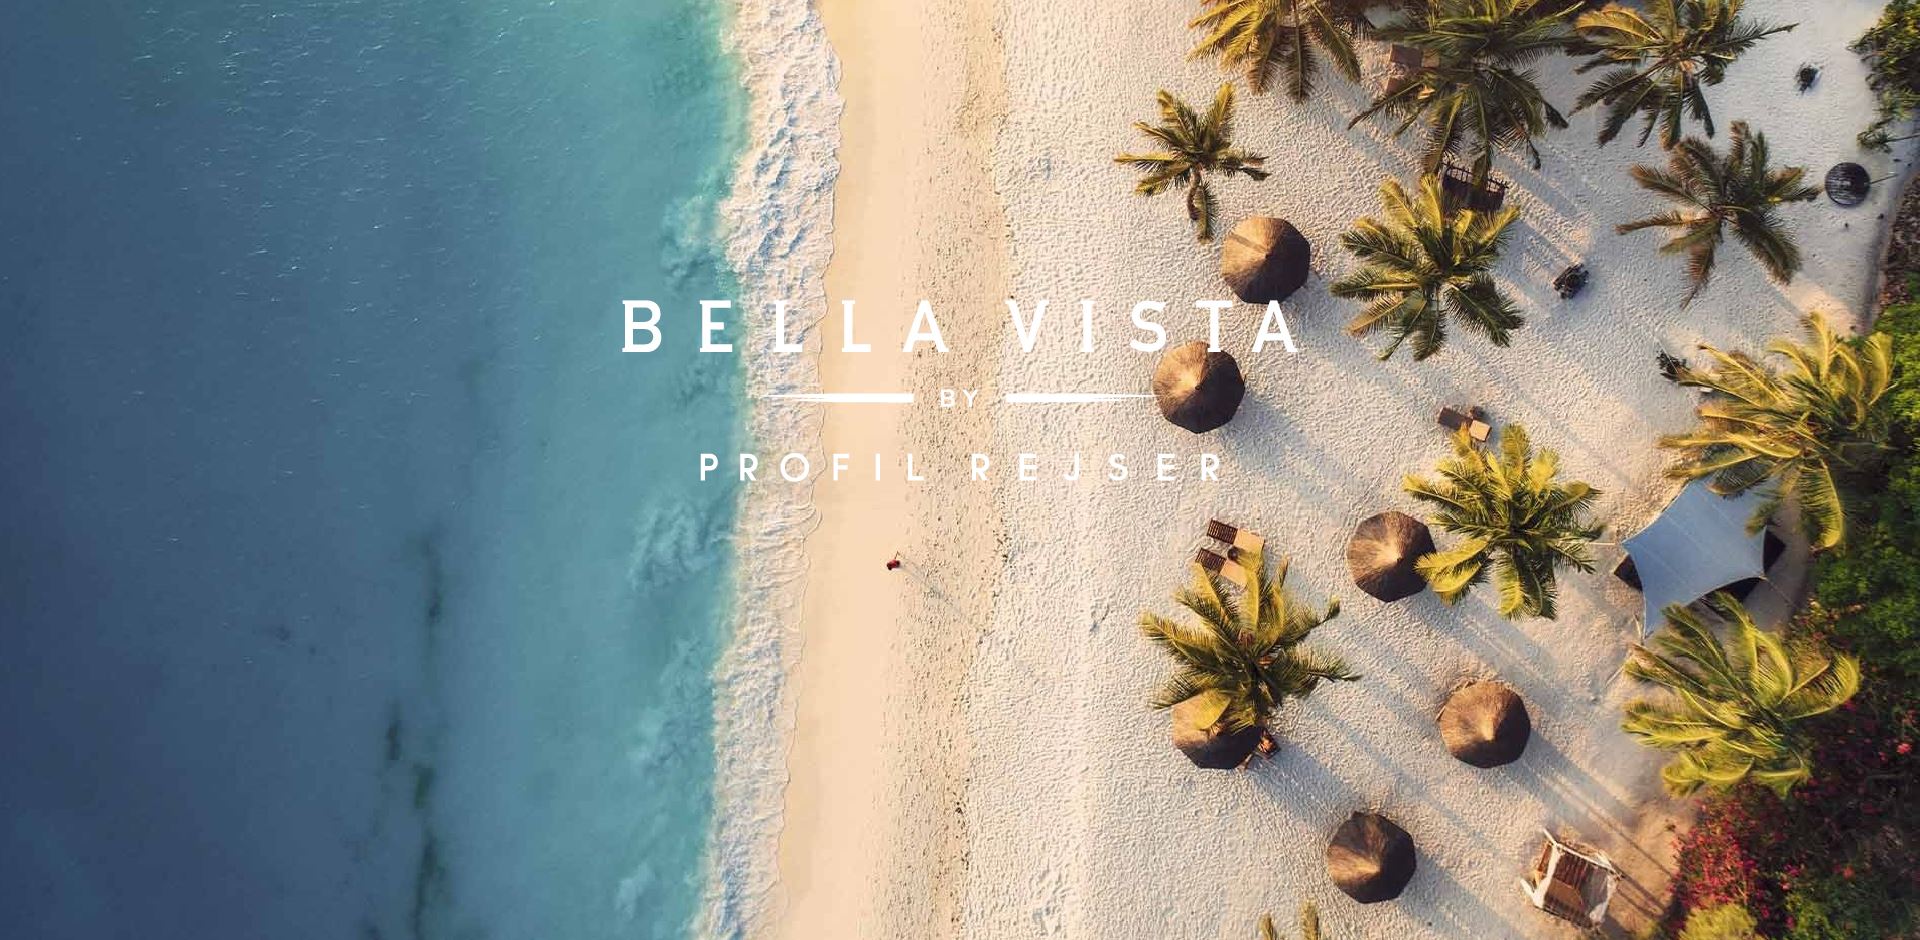 Bella Vista By Profil Rejser